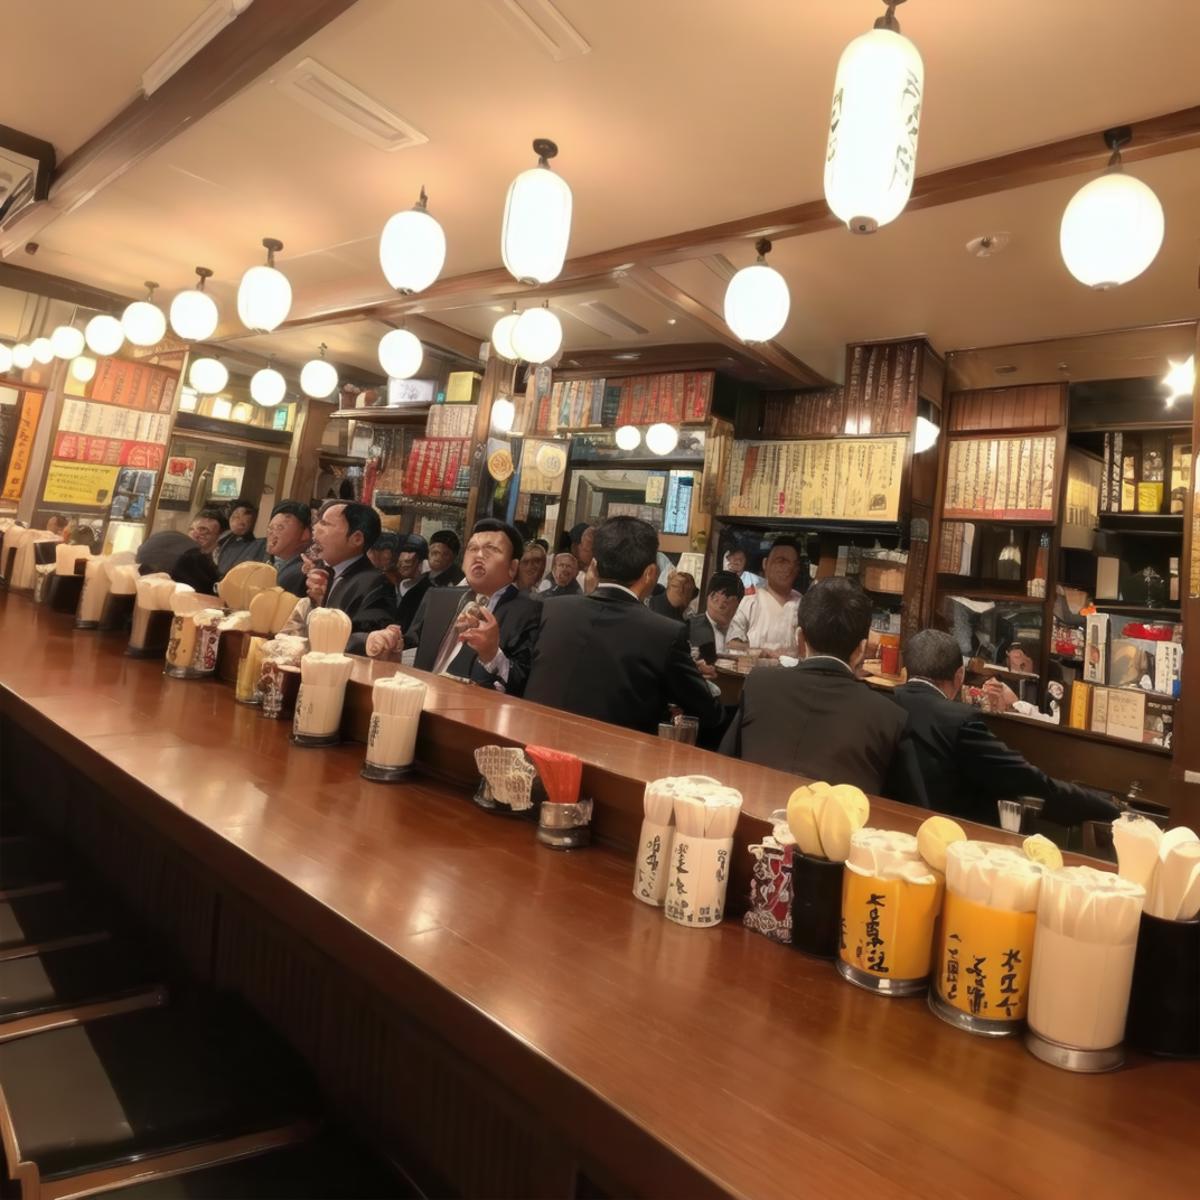 大衆酒場の店内 / Inside a popular Japanese Tavern SD15 image by swingwings